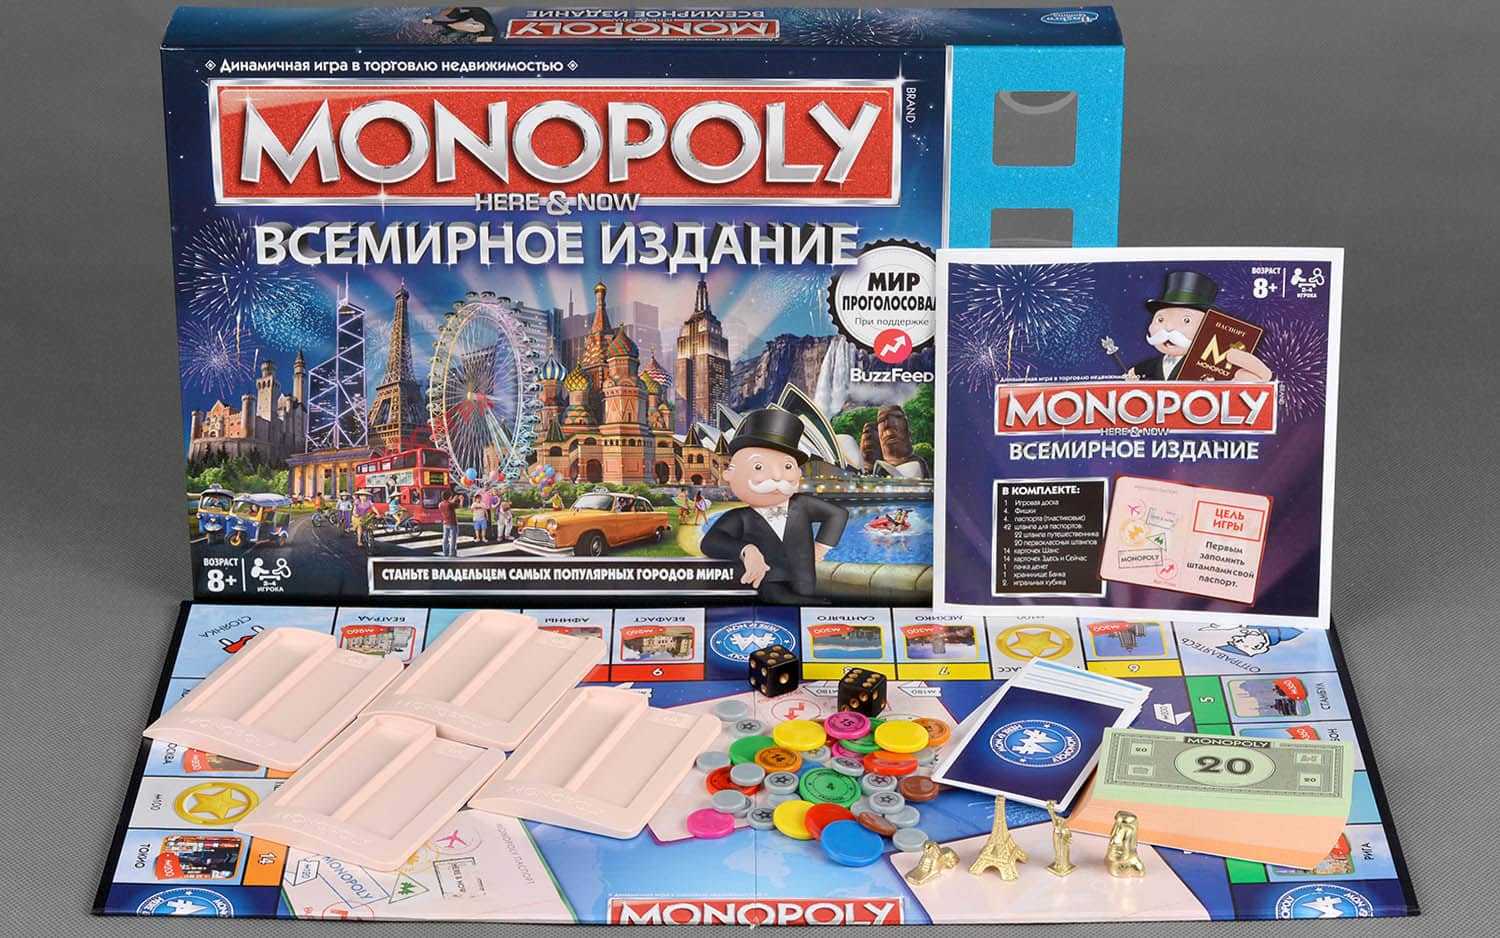 «монополия» – экономическая игра века